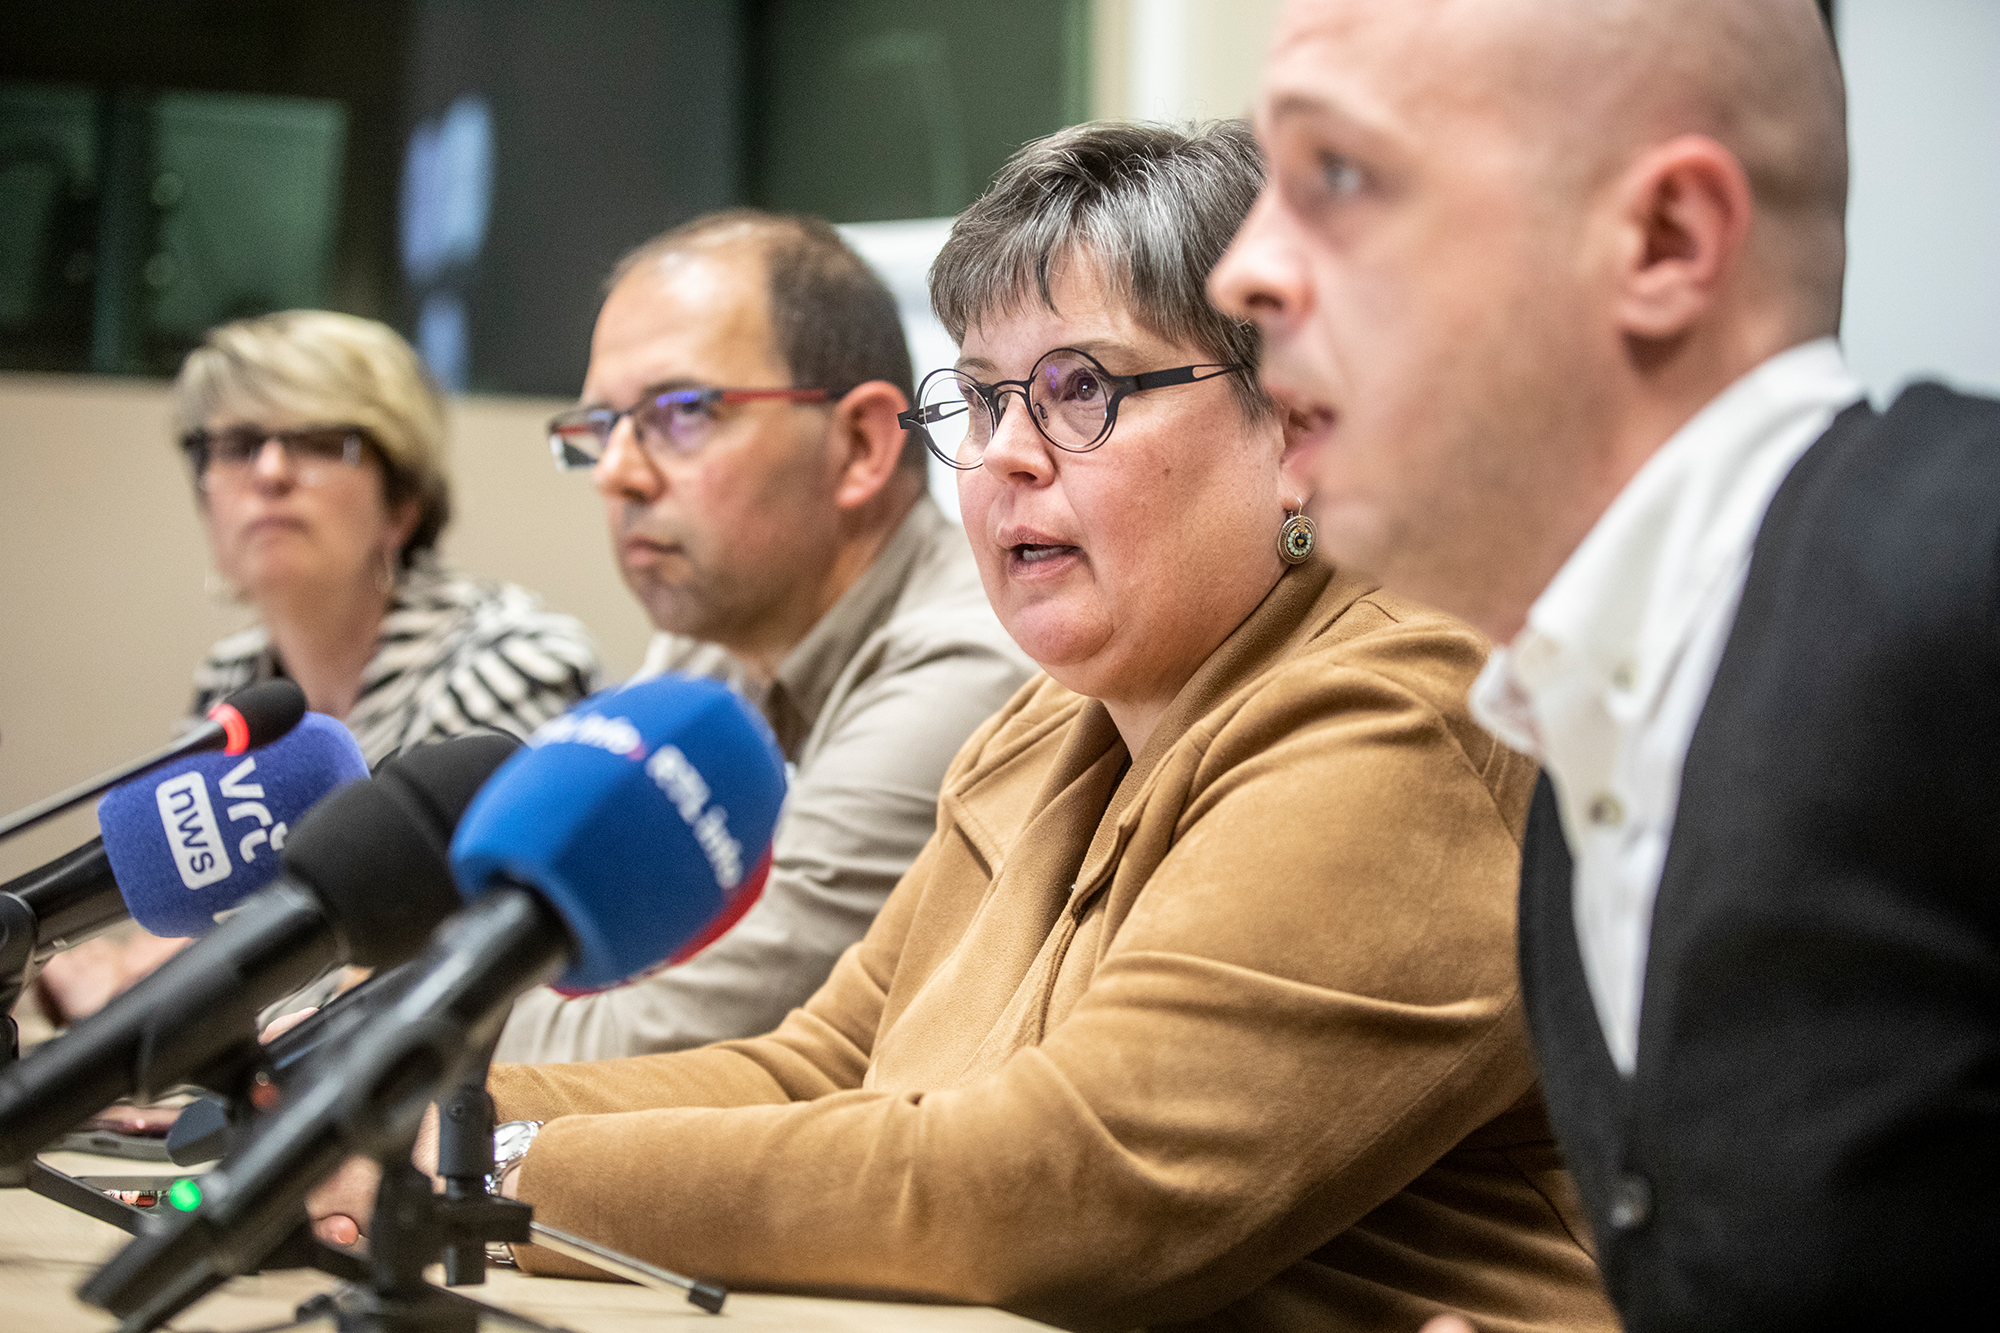 Kristel Van Damme (ACV), Jan De Weghe (BBTK), Myriam Delmee (SETCa) und Wilson Wellens (ACLVB) während einer Pressekonferenz der Gewerkschaften der Supermarktkette Delhaize nach einem Treffen mit der Geschäftsführung und dem Sozialmediator in Brüssel (Bild: Hatim Kaghat/Belga)